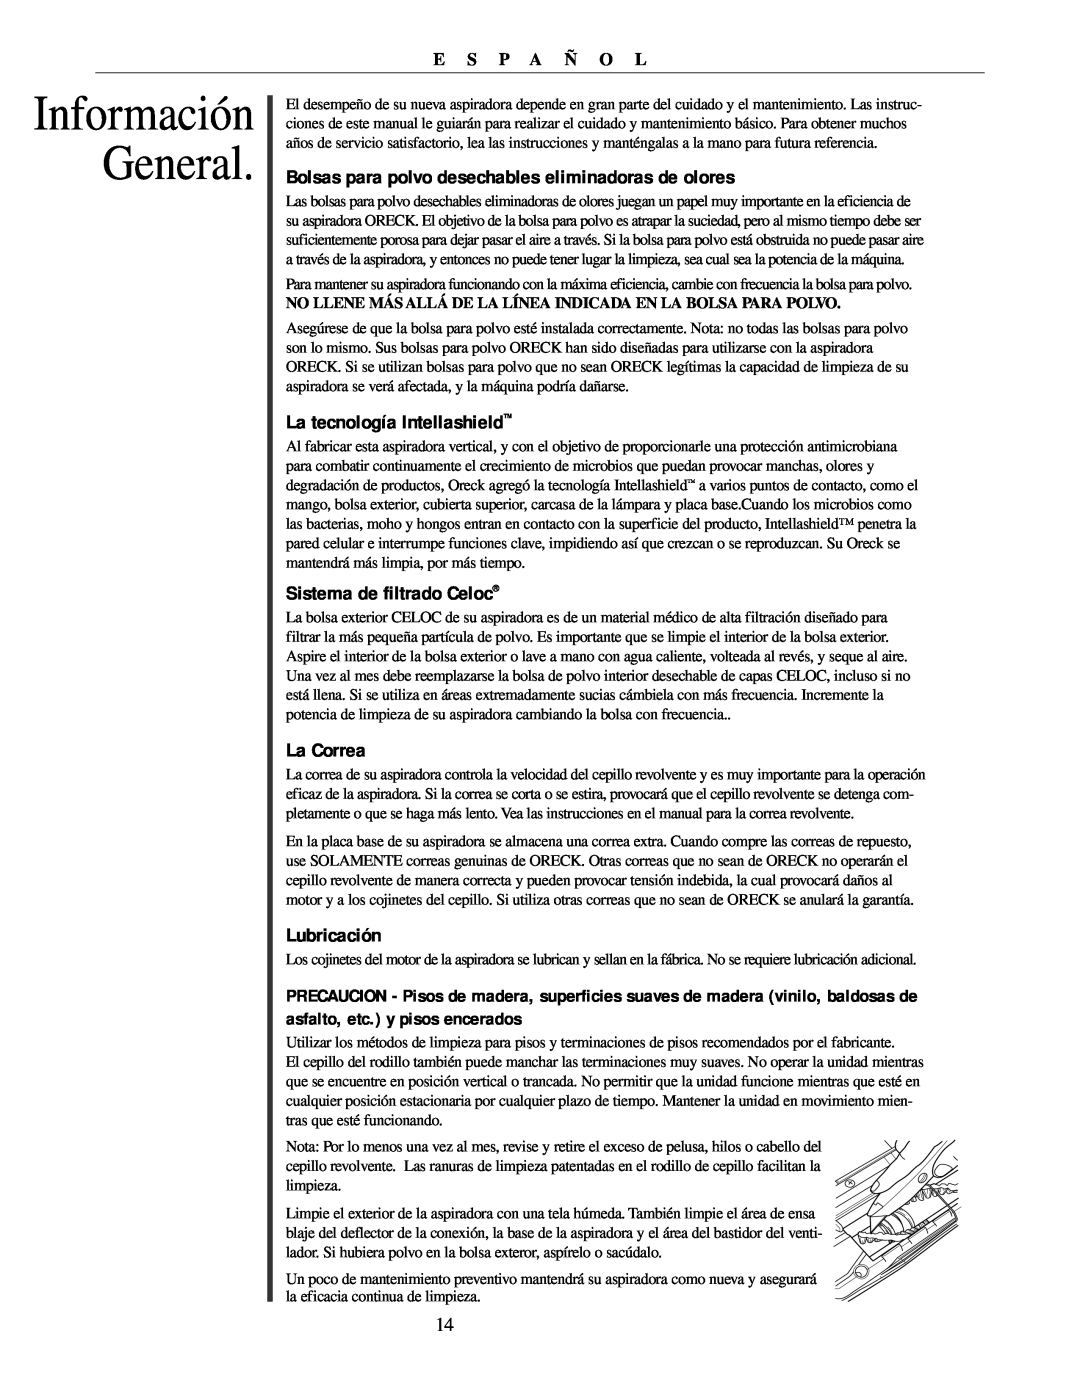 Oreck U4151 manual Información General, La tecnología Intellashield, Sistema de filtrado Celoc, La Correa, Lubricación 